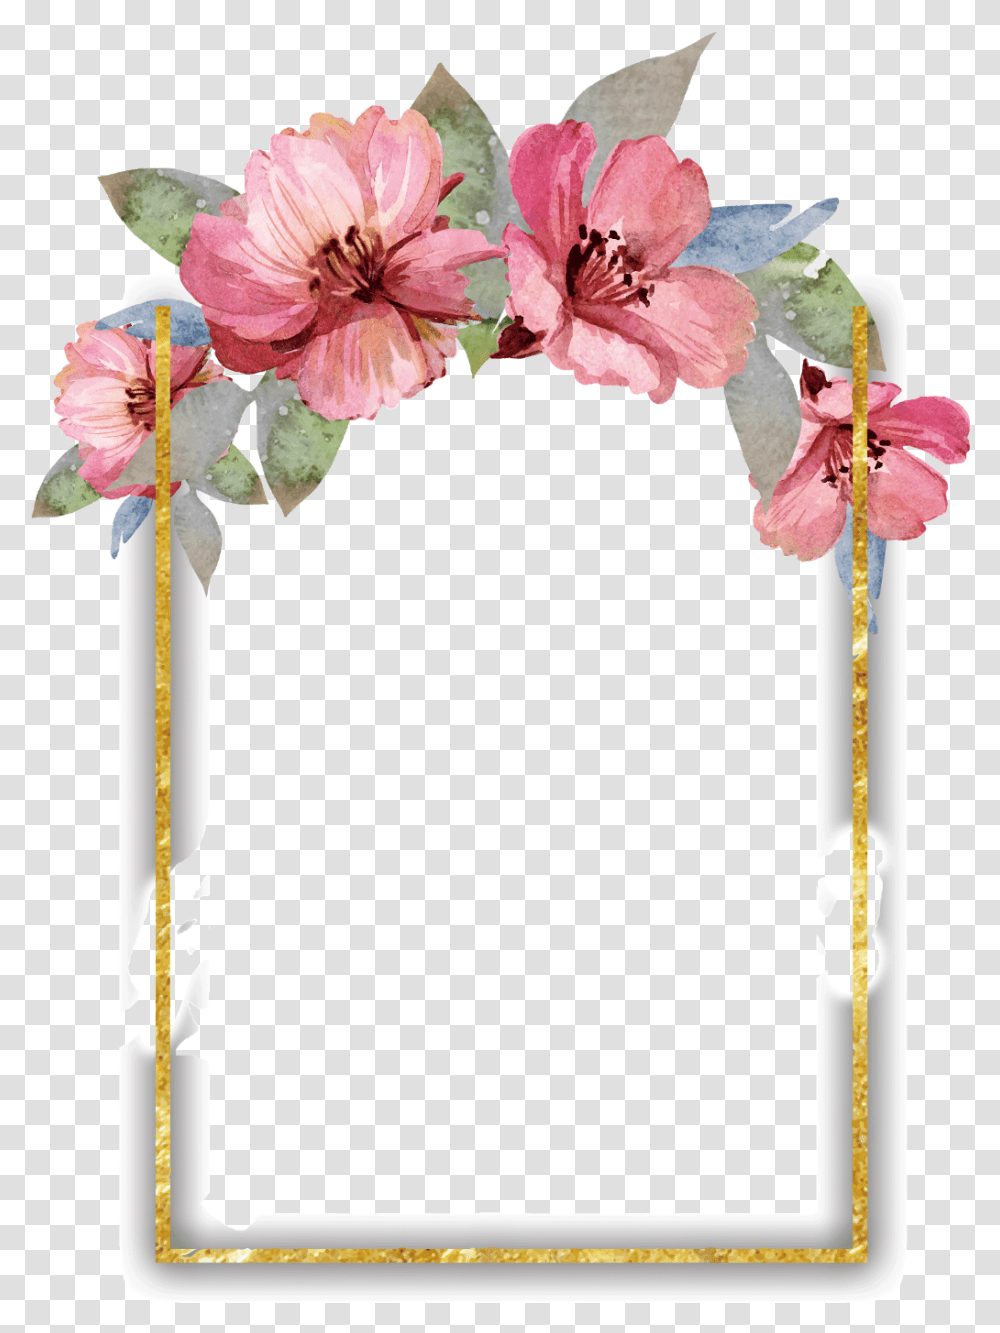 Watercolor Floral Border Border Flower Frame, Plant, Blossom, Flower Arrangement, Amaryllis Transparent Png